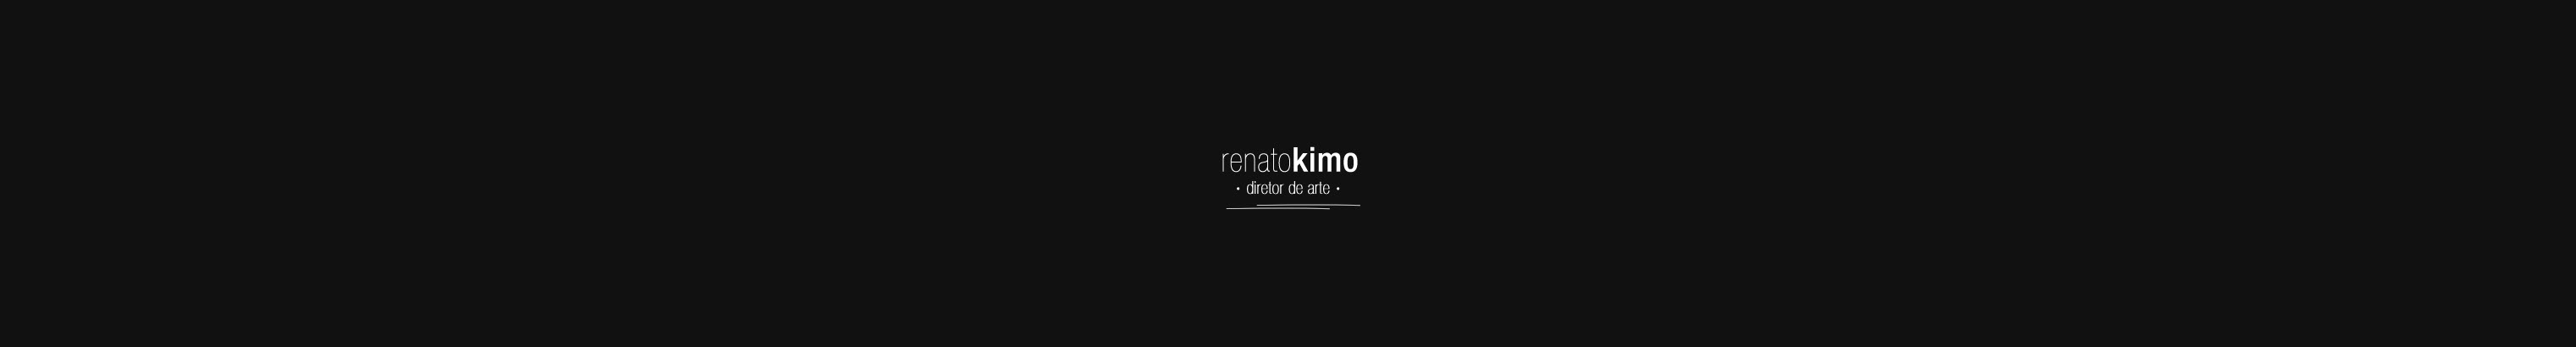 Renato Kimo's profile banner